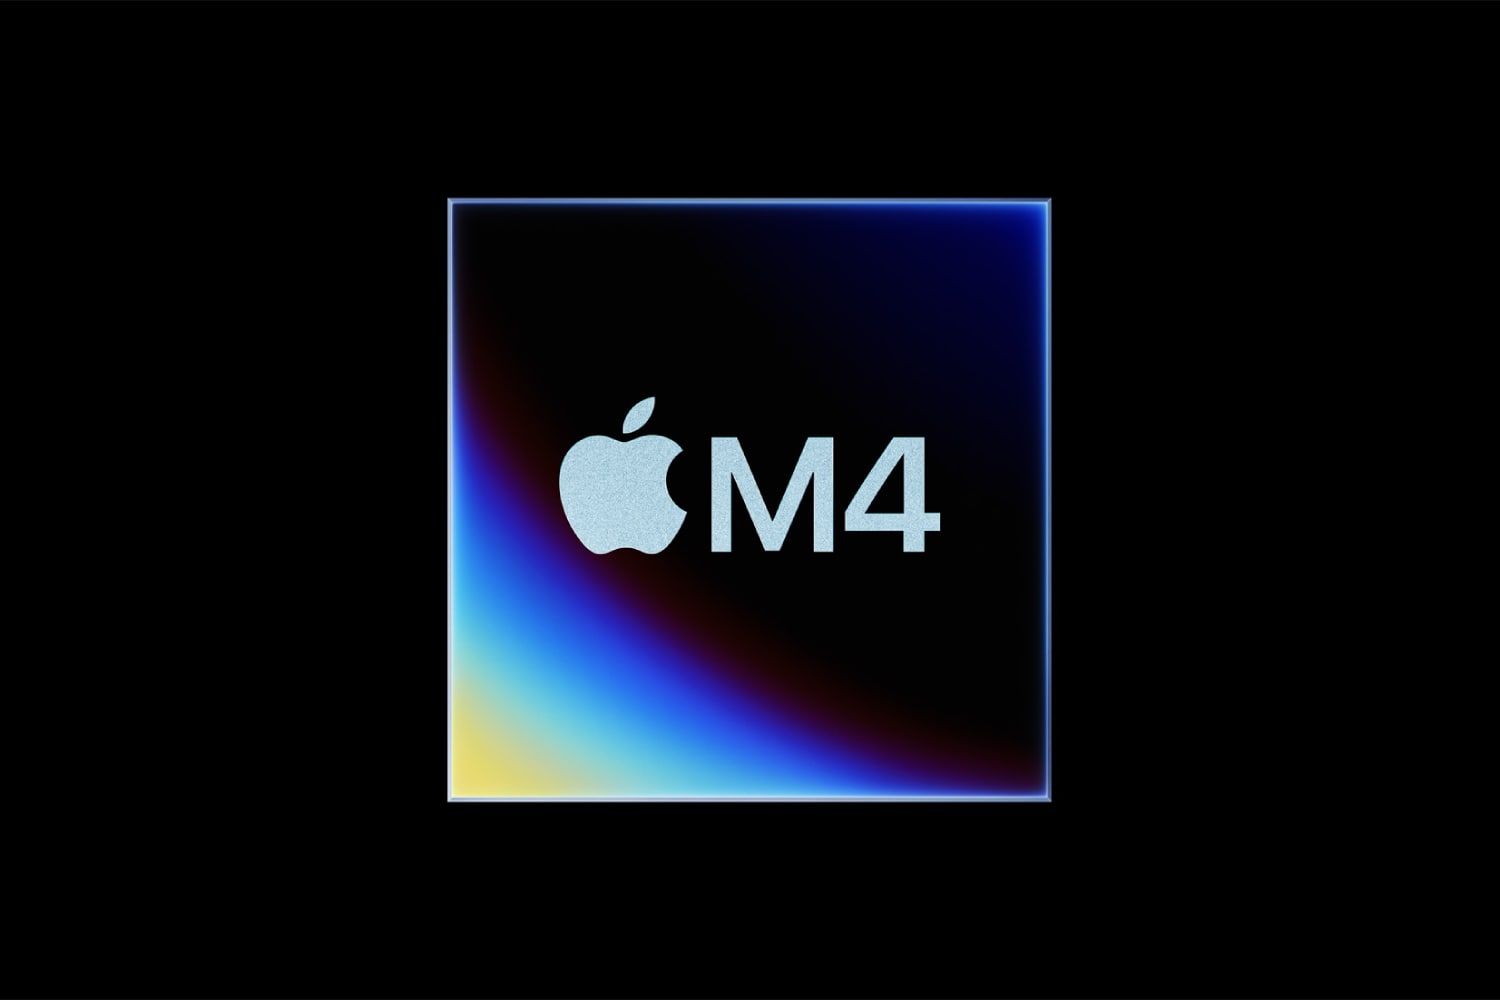 Una representación oficial del chip M4 de Apple.